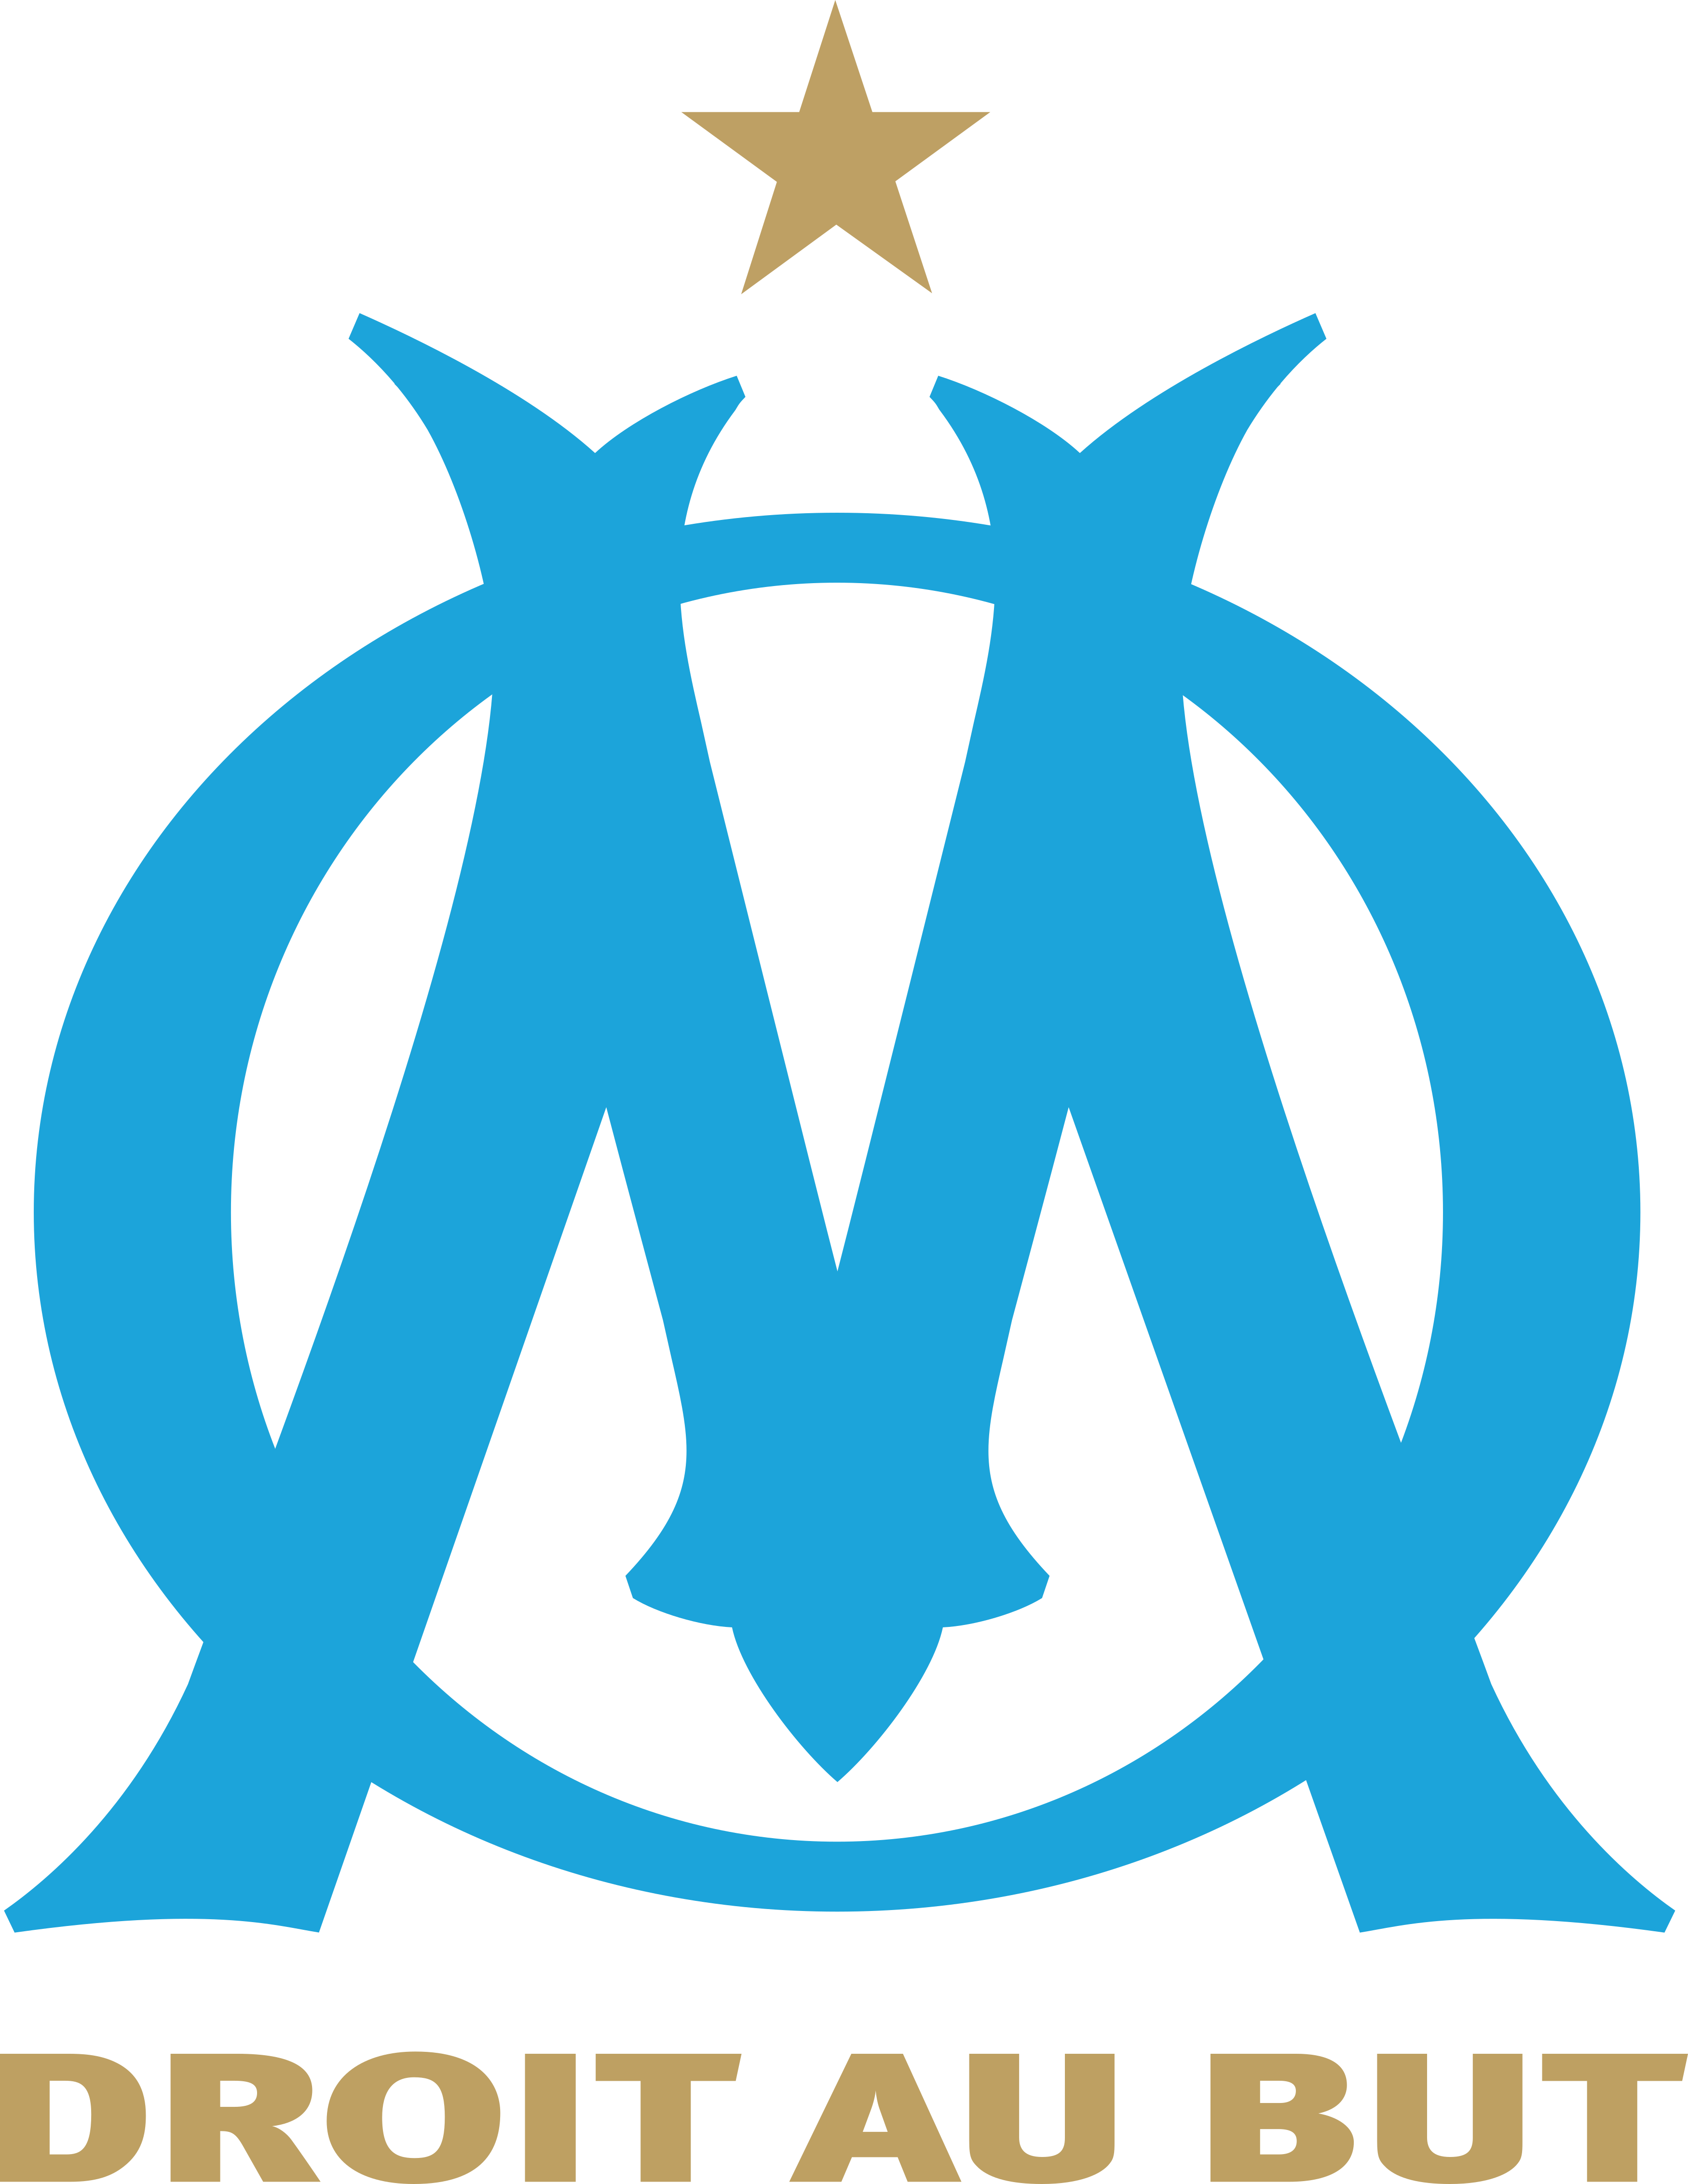 olympique de marseille - Olympique de Marseille Logo